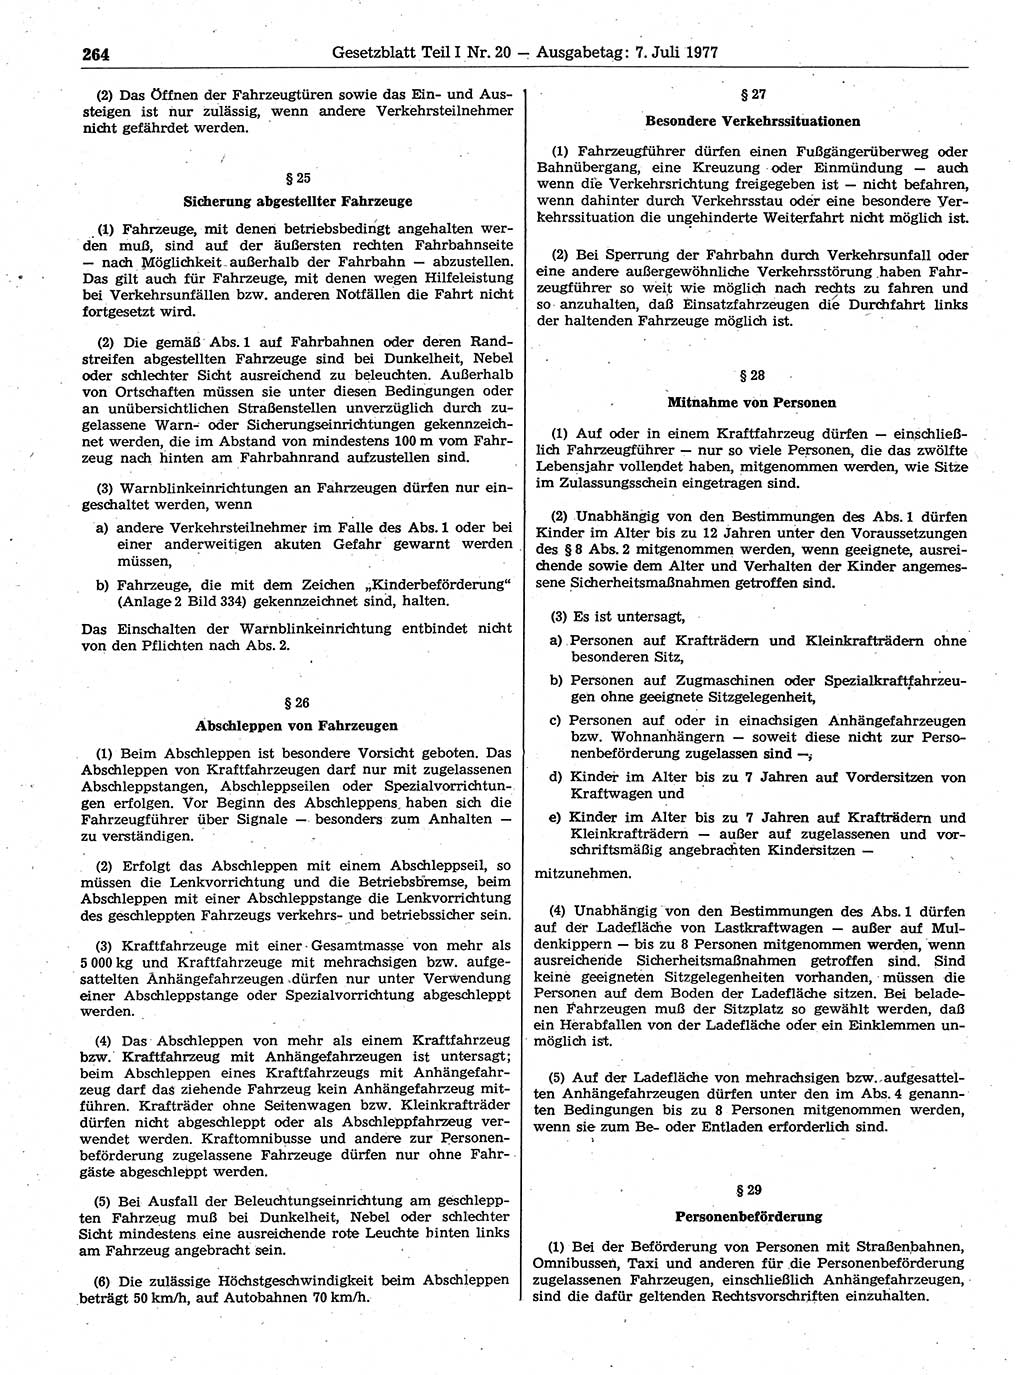 Gesetzblatt (GBl.) der Deutschen Demokratischen Republik (DDR) Teil Ⅰ 1977, Seite 264 (GBl. DDR Ⅰ 1977, S. 264)